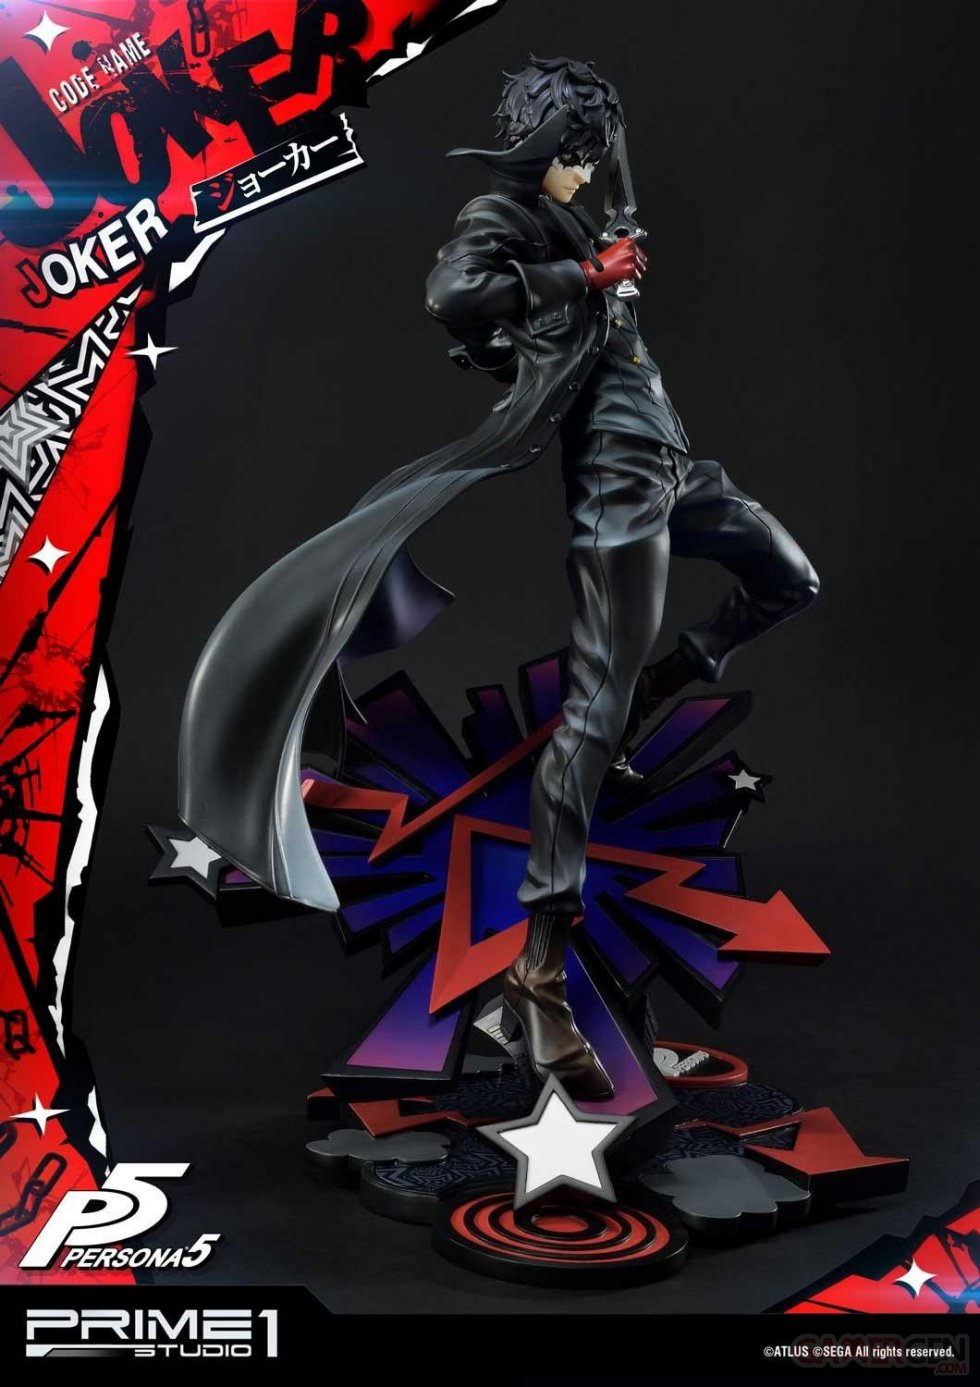 Persona-5-Joker-Prime-1-Studio-statuette-10-02-07-2020